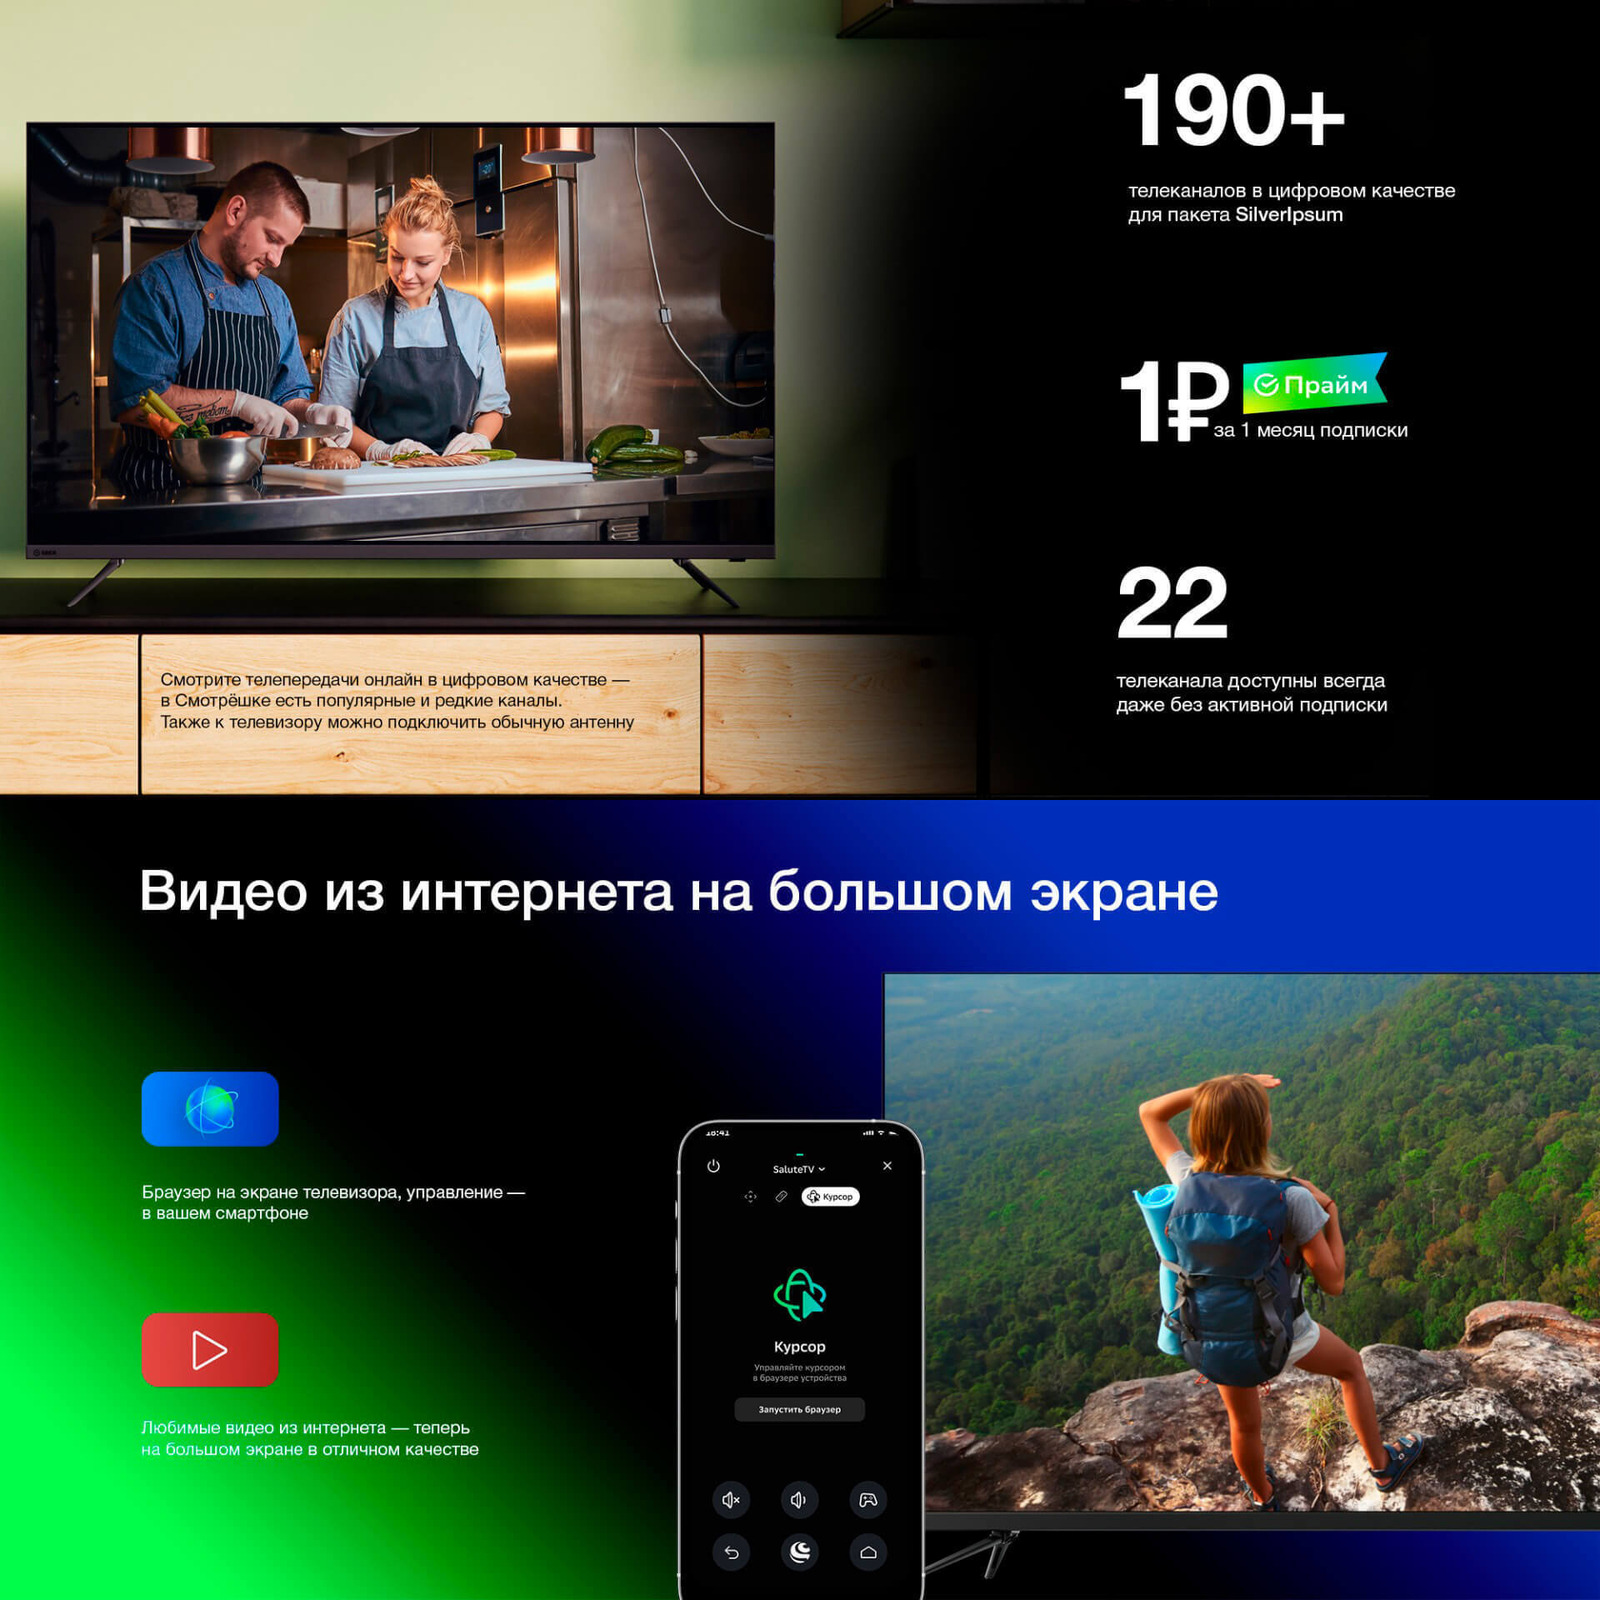 190+ телеканалов. 1 рубль за 1 месяц подписки. 22 телеканала даже без подписки. Видео из интернета на большом экране.